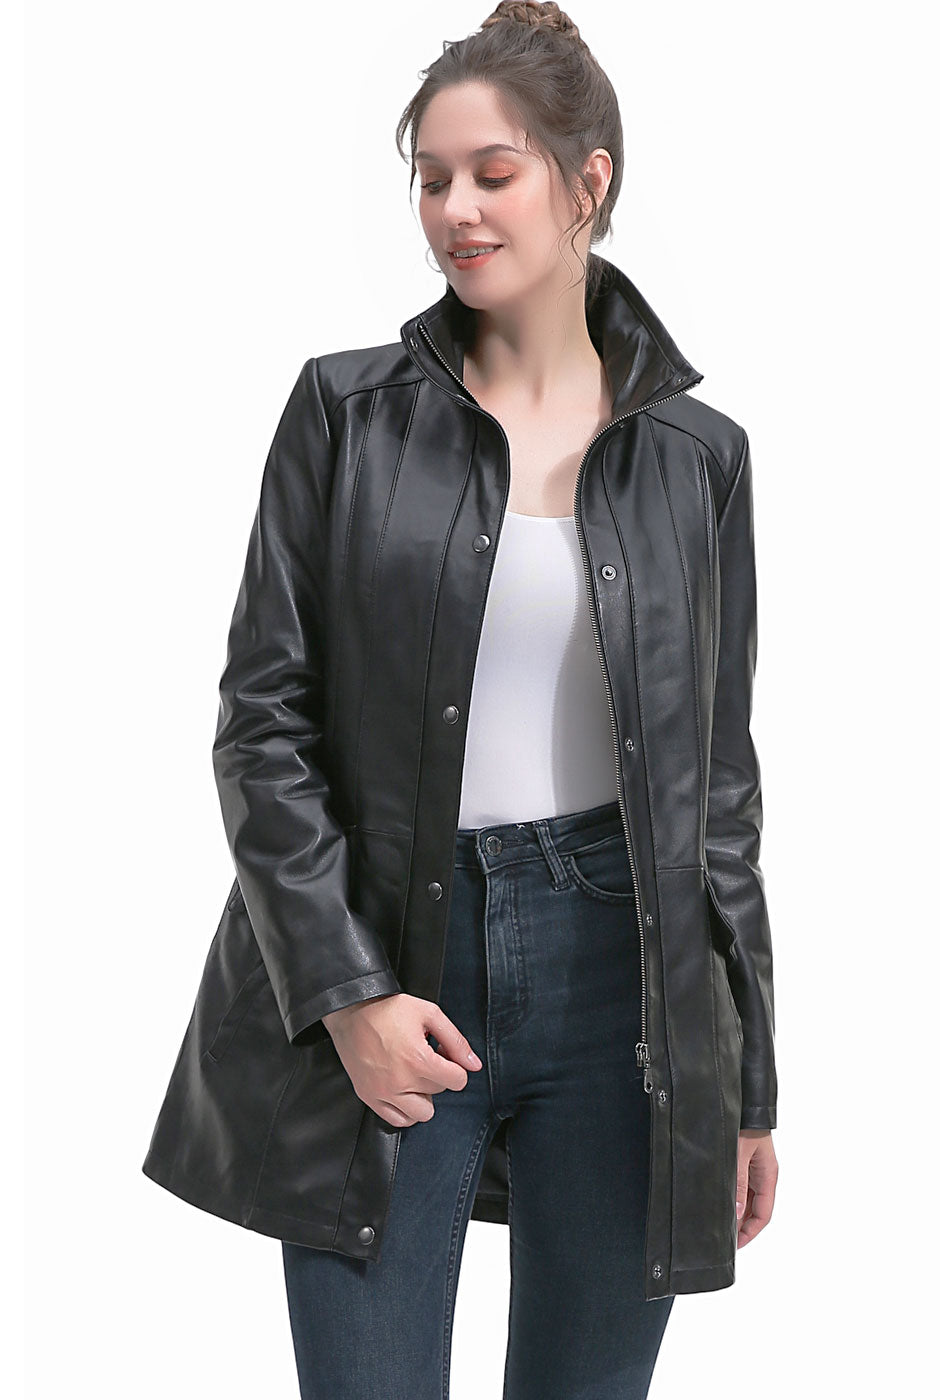 BGSD Women Rachel New Zealand Lambskin Leather Coat